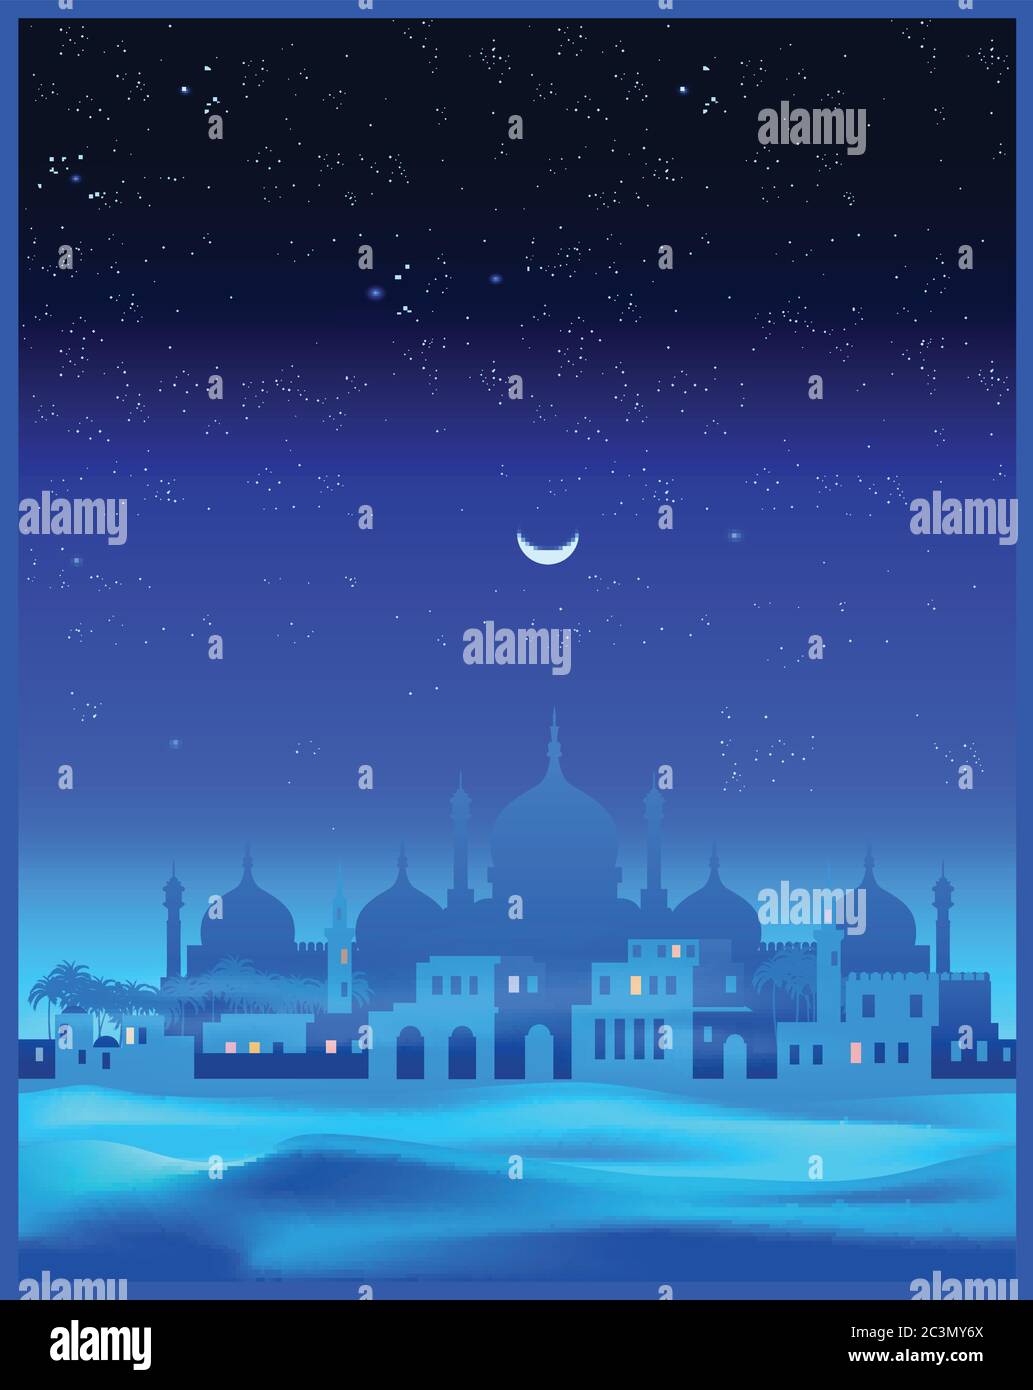 Illustrazione vettoriale stilizzata della vecchia città araba durante la notte nel mezzo del deserto. Senza giunture in orizzontale, se necessario Illustrazione Vettoriale